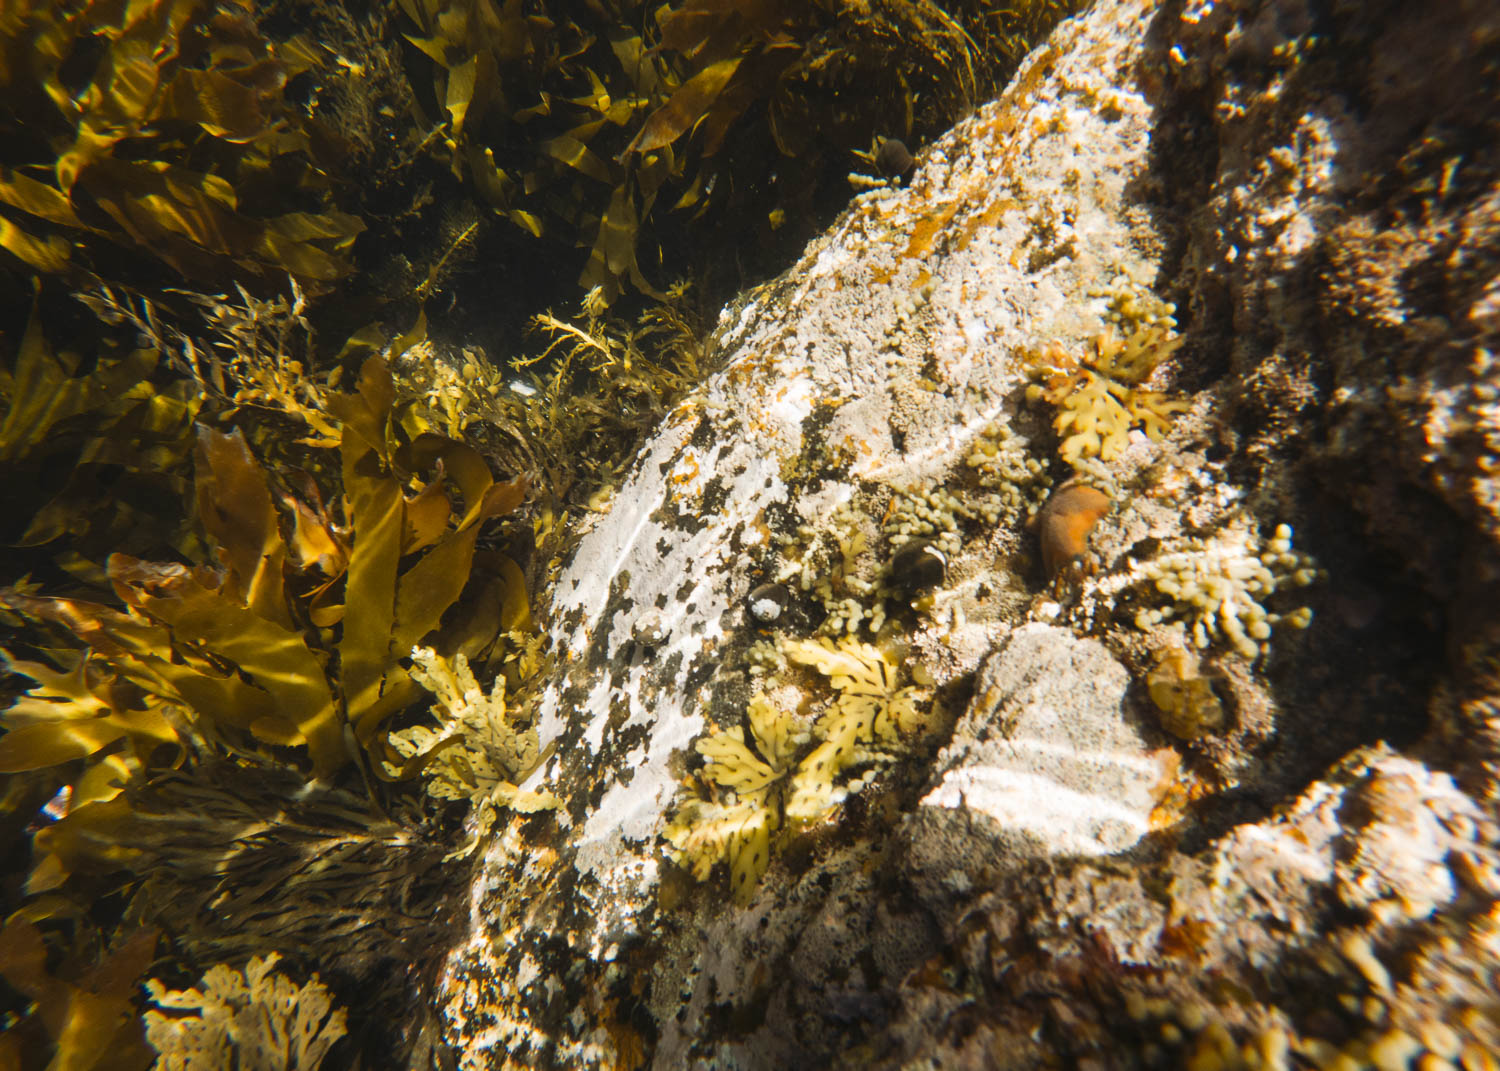 Rocks and seaweed underwater. Photo © Leonie Wise